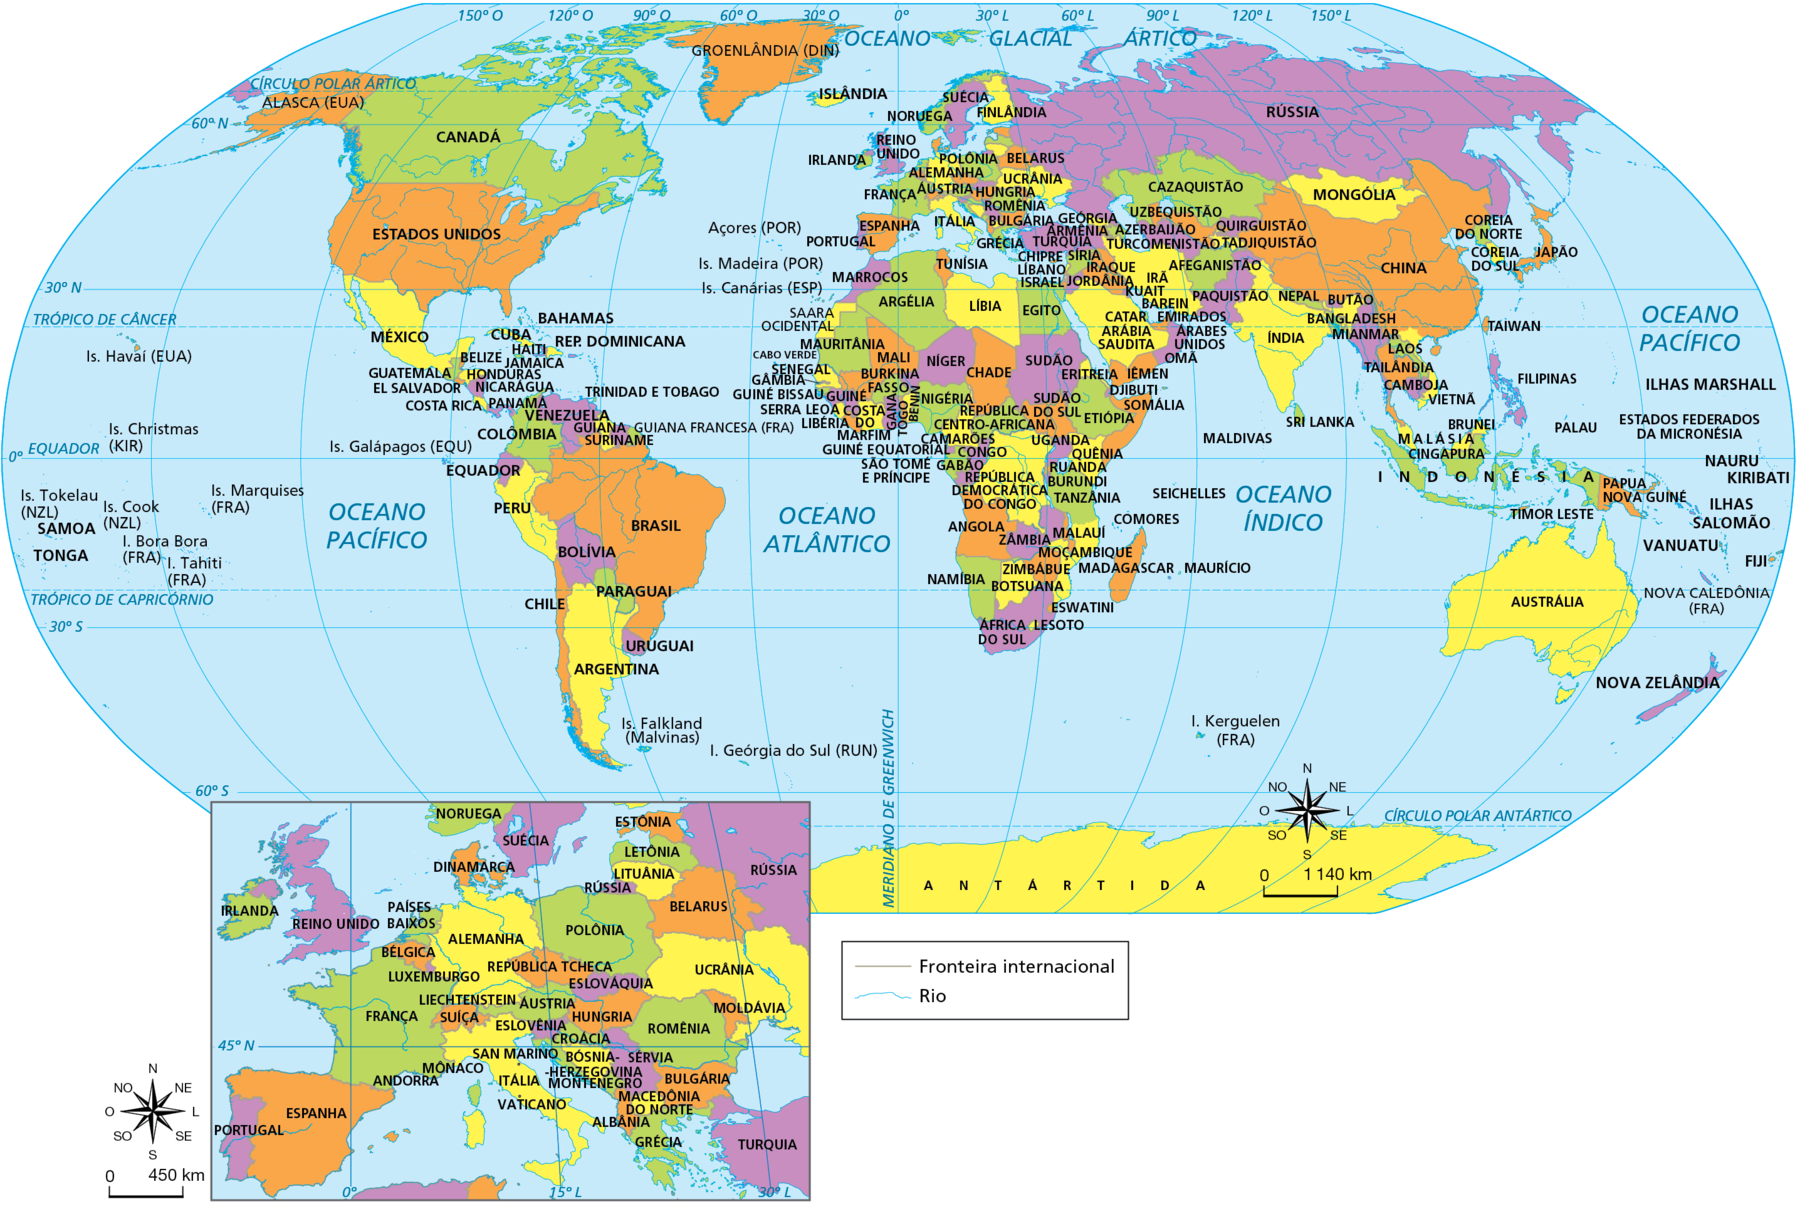 Mapa. Planisfério político. Divisão territorial de todos os países do mundo. Ilhas do Havaí (Estados Unidos), Ilhas Christmas (Austrália), Ilhas Tokelau (Nova Zelândia), SAMOA, TONGA, Ilhas Cook (Nova Zelândia), Ilha Tahiti (França), Ilha Bora Bora (França), Ilhas Marquises, Ilhas Galápagos (Equador), ANTÁRTIDA, Alasca (Estados Unidos), Groenlândia (Dinamarca), CANADÁ, ESTADOS UNIDOS, MÉXICO, BAHAMAS, CUBA, JAMAICA HAITI, REPÚBLICA DOMINICANA, BELIZE, GUATEMALA, HONDURAS, EL SALVADOR, NICARÁGUA, COSTA RICA, TRINIDAD E TOBAGO, PANAMÁ, VENEZUELA, GUIANA, Guiana Francesa (França), SURINAME, COLÔMBIA, EQUADOR, PERU, BRASIL, BOLÍVIA, PARAGUAI, CHILE, URUGUAI, ARGENTINA, Ilhas Falkland (Malvinas), Ilha Geórgia do Sul (Reino Unido). Açores (Portugal), Ilhas Madeira (Portugal), Ilhas Canárias (Espanha), ISLÂNDIA, SUÉCIA, NORUEGA, FINLÂNDIA, DINAMARCA, REINO UNIDO, PAÍSES BAIXOS, BÉLGICA, LUXEMBURGO, LIECHTENSTEIN, SUÍÇA, IRLANDA, PORTUGAL, ESPANHA, FRANÇA, ANDORRA, MÔNACO, SAN MARINO, ITÁLIA, VATICANO, ESTÔNIA, LETÔNIA, LITUÂNIA, RÚSSIA, POLÔNIA, ALEMANHA, REPÚBLICA TCHECA, ÁUSTRIA, ESLOVÁQUIA, HUNGRIA, ESLOVÊNIA, CROÁCIA, BÓSNIA-HERZEGOVINA, SÉRVIA, MONTENEGRO, MACEDÔNIA DO NORTE, ALBÂNIA, GRÉCIA, TURQUIA, BULGÁRIA, ROMÊNIA, MOLDÁVIA, UCRÂNIA, BELARUS, CHIPRE, LÍBANO, ISRAEL, SÍRIA, IRAQUE, JORDÂNIA, KUAIT, BAREIN, CATAR, ARÁBIA SAUDITA, IÊMEM, OMÃ, EMIRADOS ÁRABES UNIDOS, IRÃ, AFEGANISTÃO, GEÓRGIA, ARMÊNIA, AZERBAIJÃO, TURCOMENISTÃO, CAZAQUISTÃO, UZBEQUISTÃO, QUIRGUISTÃO, TADJIQUISTÃO, PAQUISTÃO, ÍNDIA, MALDIVAS, SRI LANKA, NEPAL, BUTÃO, BANGLADESH, MIANMAR, LAOS, TAILÂNDIA, CAMBOJA, VIETNÃ, CHINA, MONGÓLIA, COREIA DO NORTE, COREIA DO SUL, JAPÃO, TAIWAN, FILIPINAS, PALAU, BRUNEI, MALÁSIA, CINGAPURA, INDONÉSIA, TIMOR LESTE, PAPUA NOVA GUINÉ, ILHAS MARSHALL, ESTADOS FEDERADOS DA MICRONÉSIA, NAURU, KIRIBATI, ILHAS SALOMÃO, VANUATU, FIJI, Nova Caledônia (França), AUSTRÁLIA, NOVA ZELÂNDIA, SAARA OCIDENTAL, MARROCOS, TUNÍSIA, MAURITÂNIA, ARGÉLIA, LÍBIA, EGITO, CABO VERDE, SENEGAL, GÂMBIA, GUINÉ BISSAU, MALI, NÍGER, CHADE, SUDÃO, ERITREIA, DJIBUTI, GUINÉ, SERRA LEOA, LIBÉRIA, COSTA DO MARFIM, BURKINA FASSO, GANA, TOGO, BENIM, NIGÉRIA, GUINÉ EQUATORIAL, SÃO TOMÉ E PRÍNCIPE, CAMARÕES, REPÚBLICA CENTRO AFRICANA, GABÃO, CONGO, REPÚBLICA DEMOCRÁTICA DO CONGO, SUDÃO DO SUL, UGANDA, ETIÓPIA, SOMÁLIA, QUÊNIA, RUANDA, BURUNDI, TANZÂNIA, ANGOLA, ZÂMBIA, MALAUÍ, COMORES, SEICHELLS, NAMÍBIA, ZIMBABUE, BOTSUANA, MOÇAMBIQUE, MADAGASCAR, MAURÍCIO, ESWATINI, ÁFRICA DO SUL, LESOTO, Ilha Kerguelen (França).
Na parte de baixo do mapa, à direita, rosa dos ventos e escala de 0 a 1.140 quilômetros.